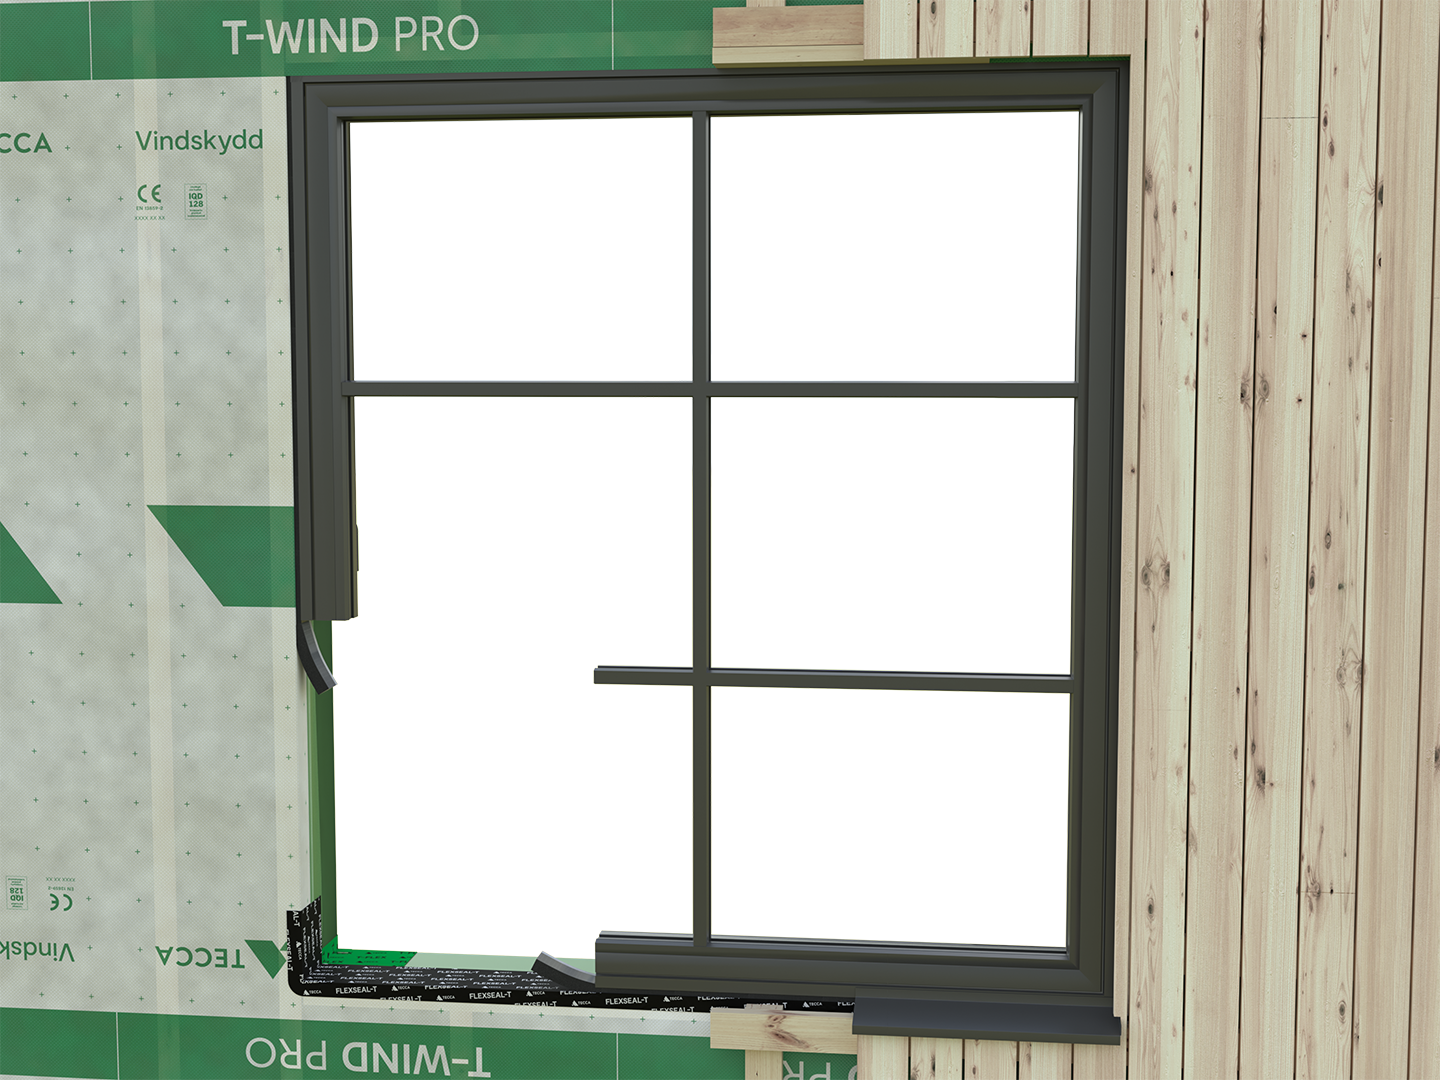 Täta rätt - Produktguide för tätning av fönster och dörrar